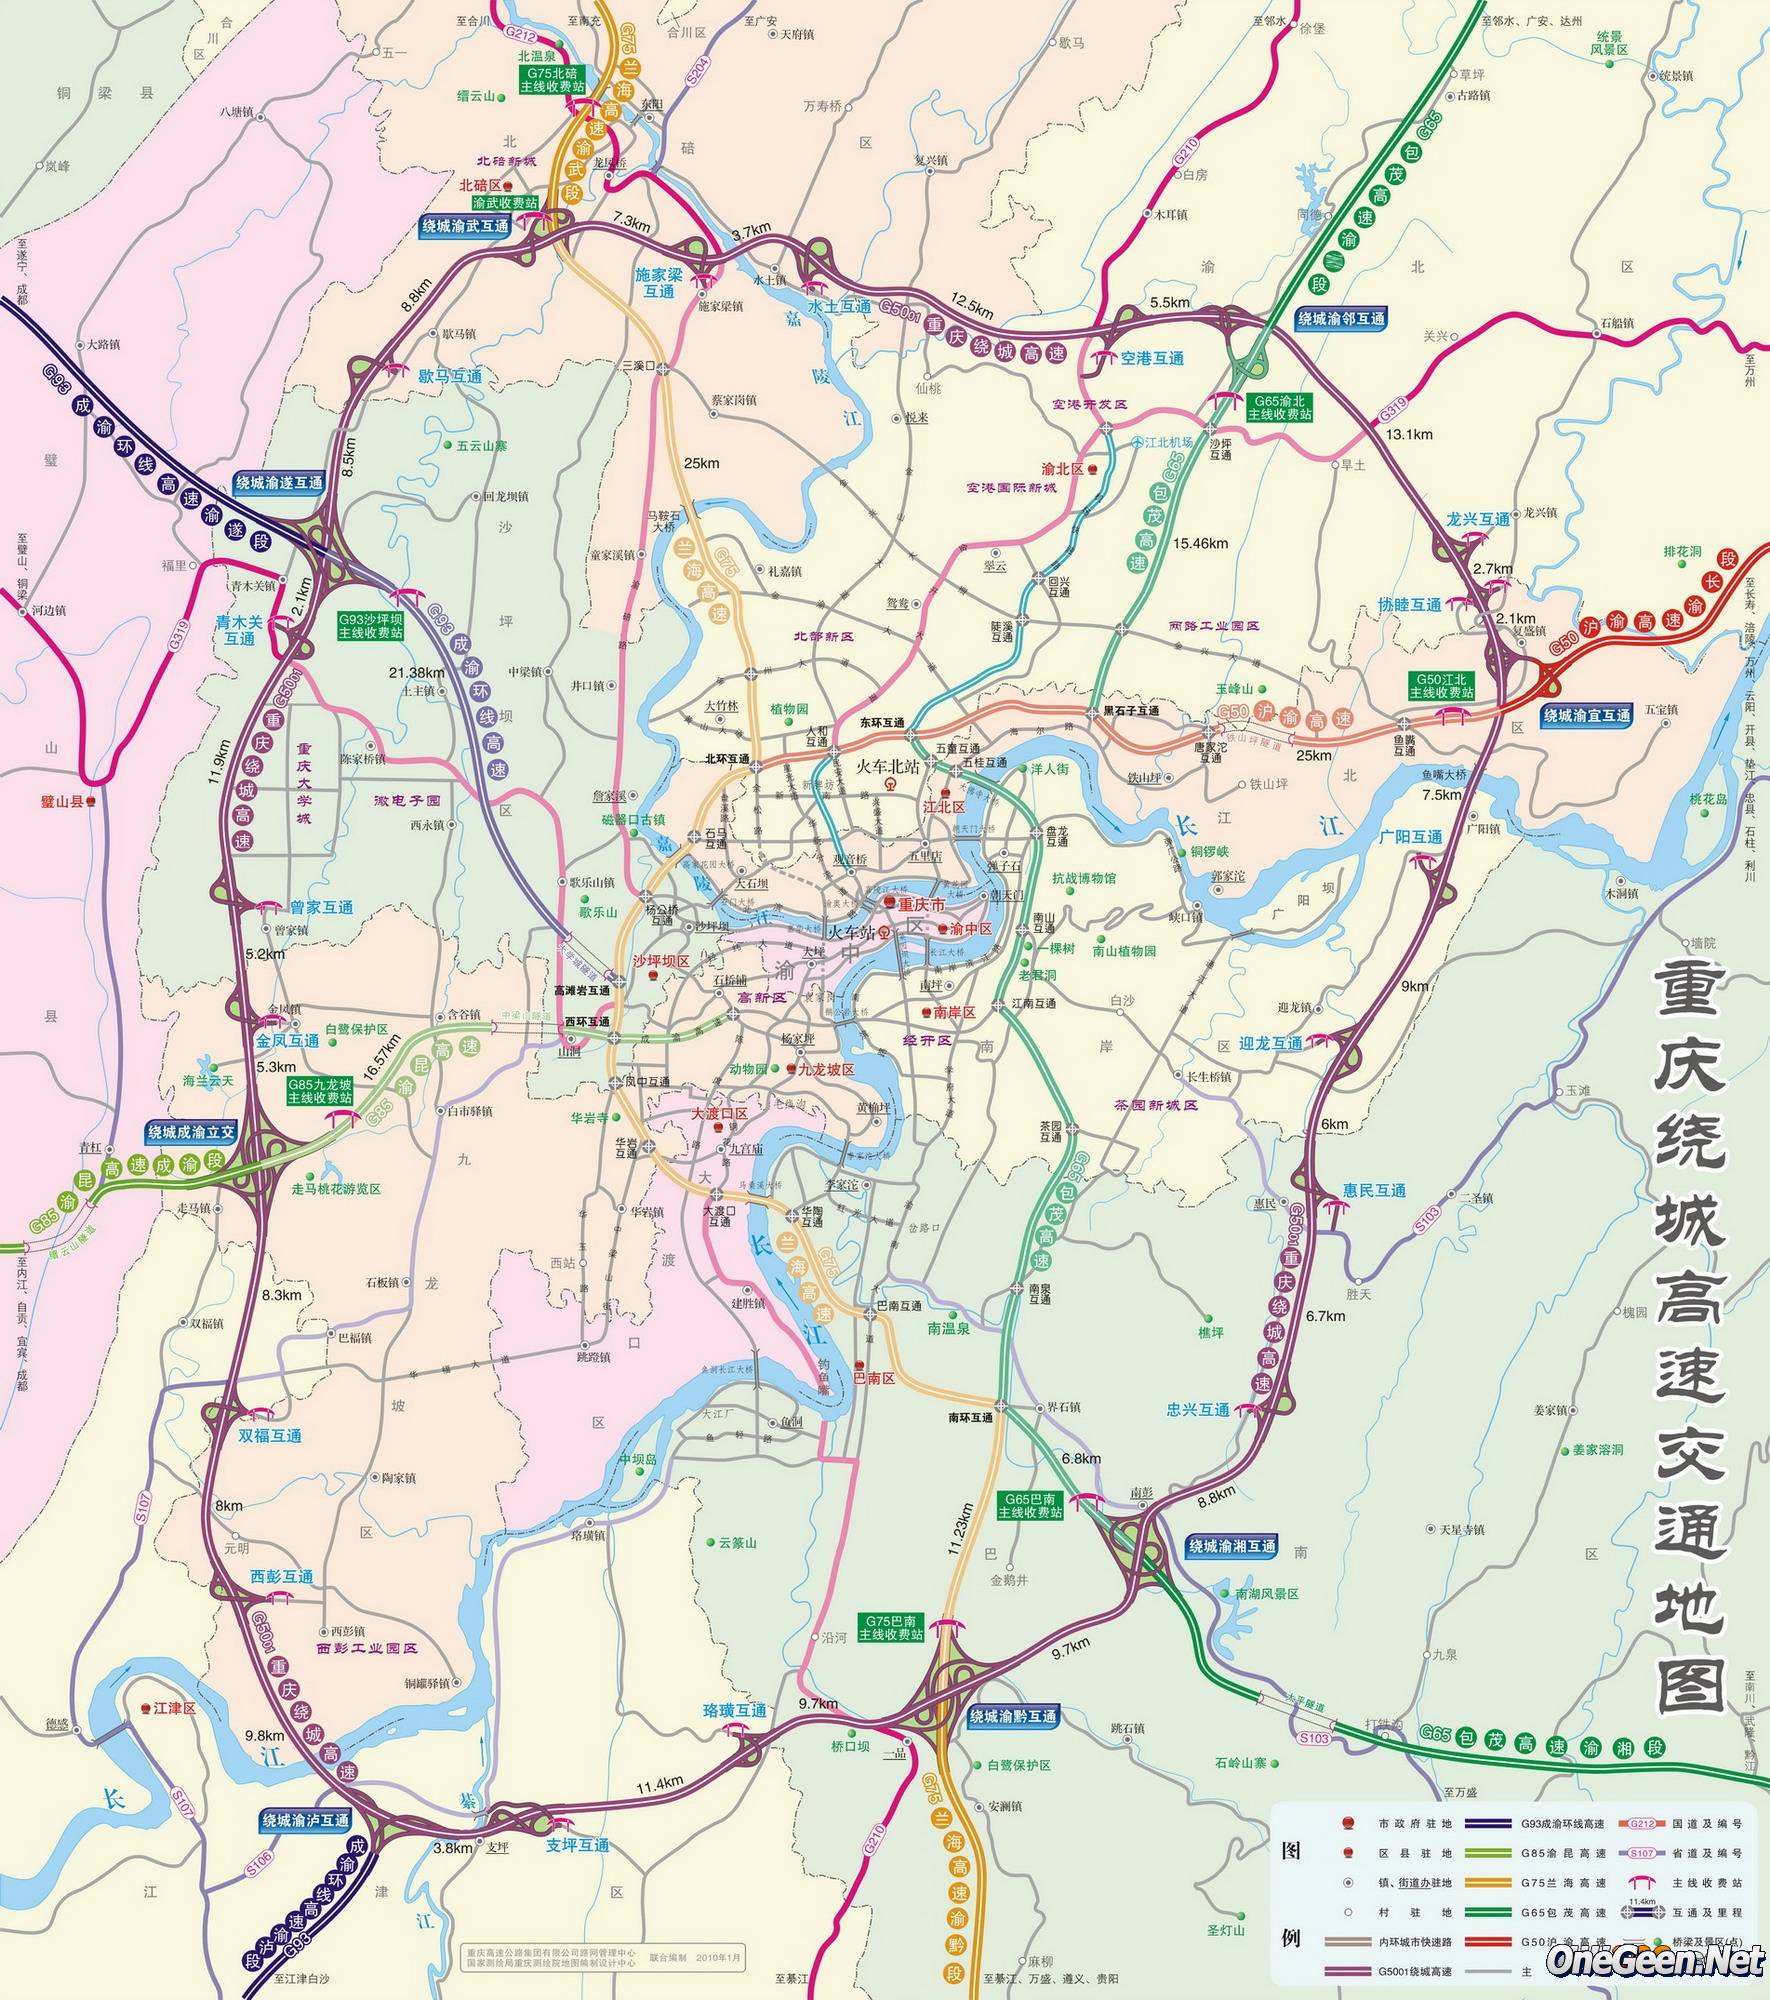 官方微博公布重庆高速最新最全地图(图)_大渝网_腾讯网